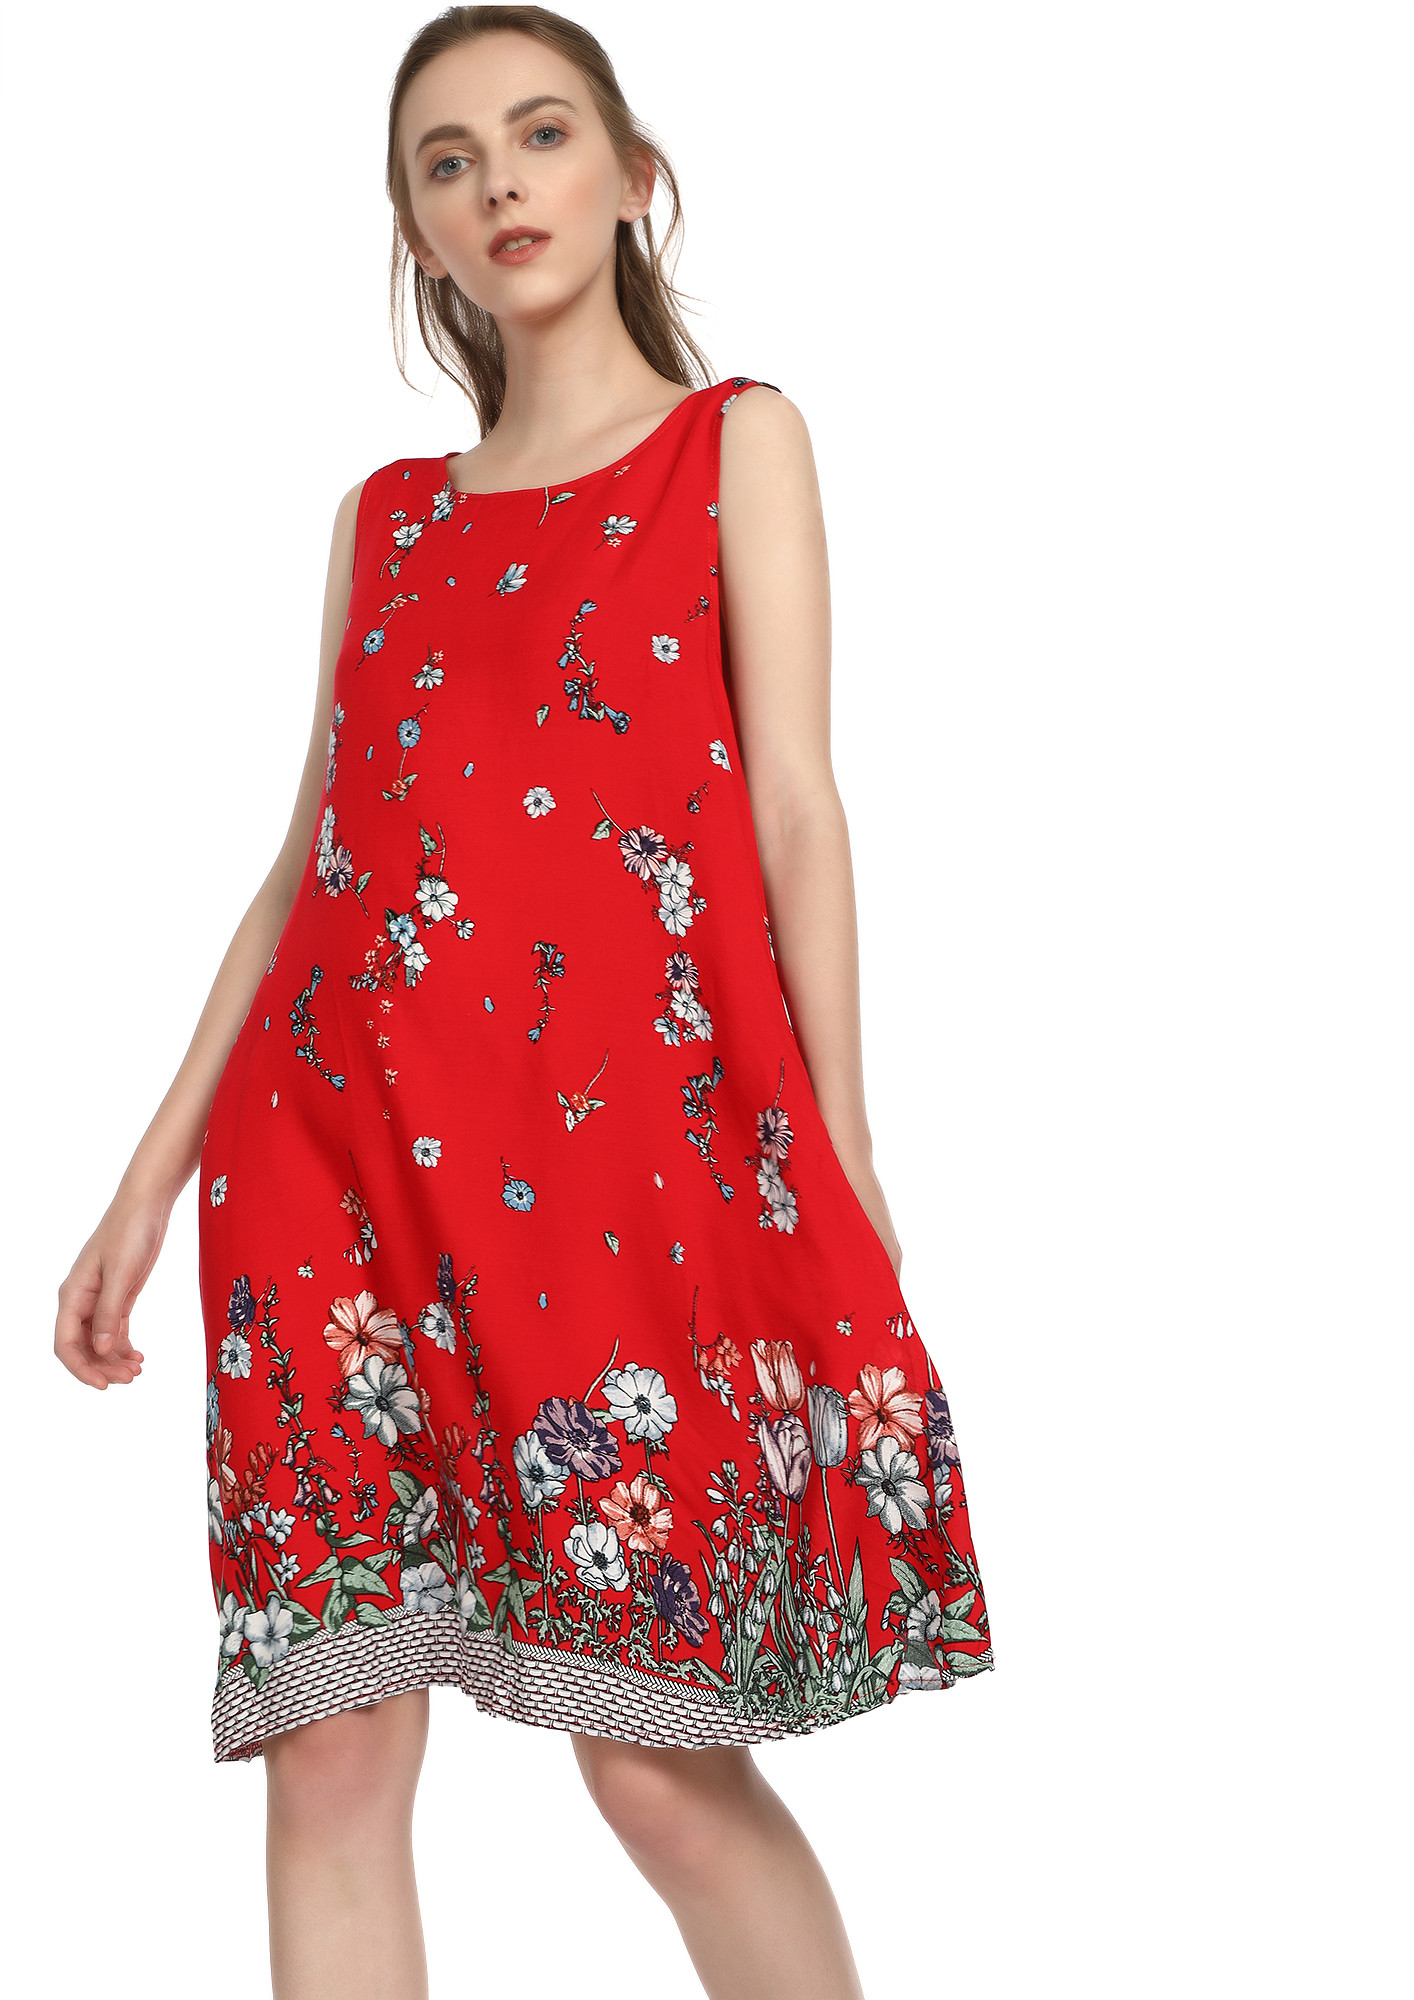 FLOWER SHOWER RED SHIFT DRESS